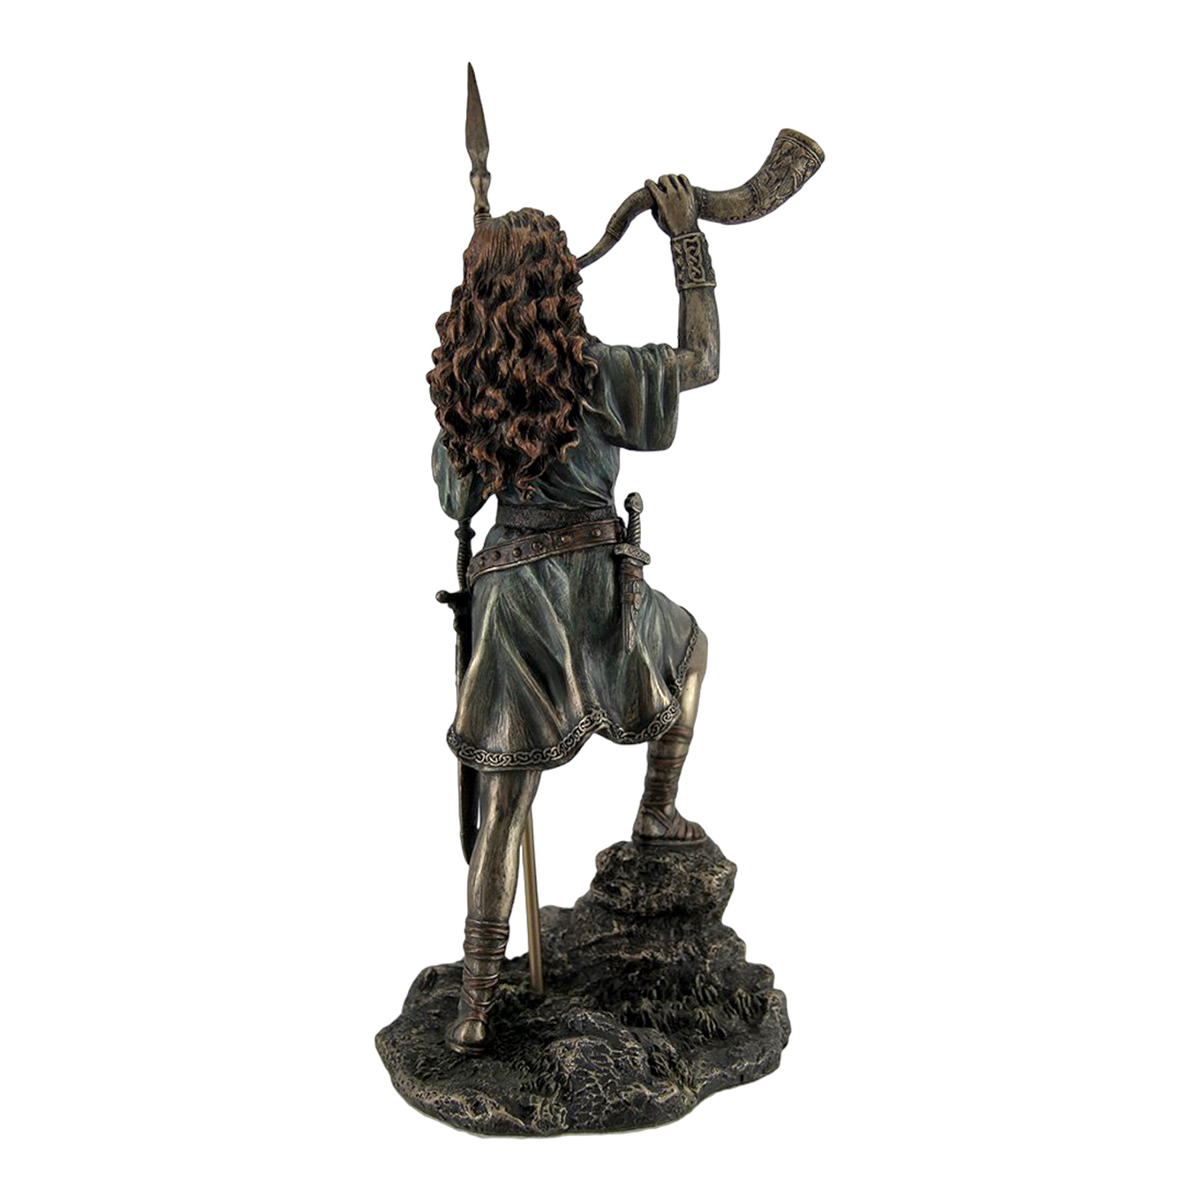 Boudica Warrior Queen Statue